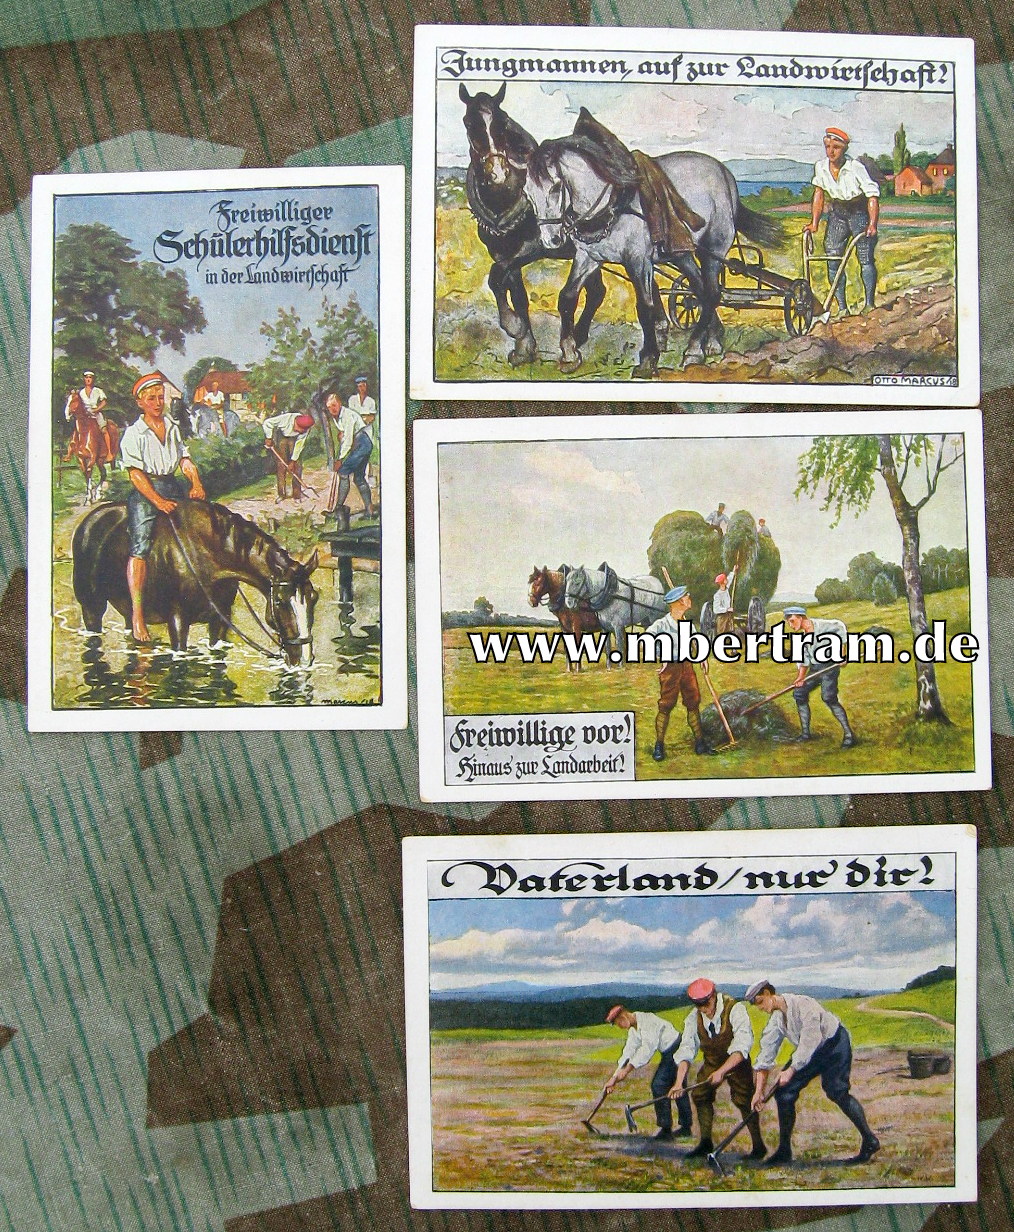 4 Postkarten, freiwilliger Schüler Hilfsdienst in der Landwirtschaft, 1917